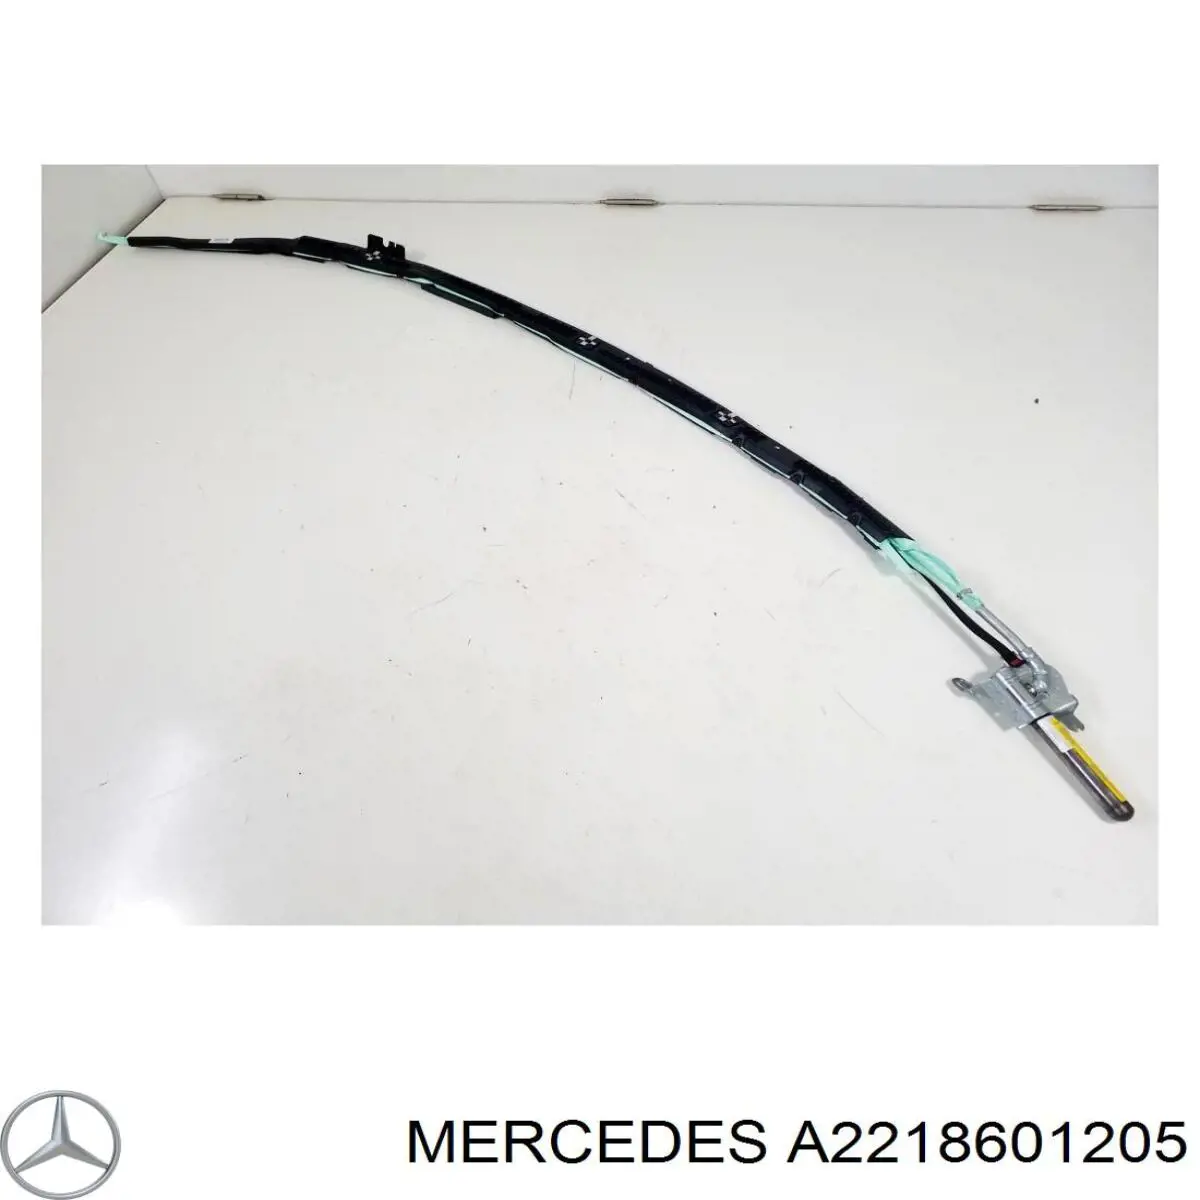 A2218601205 Mercedes airbag de cortina lateral derecha